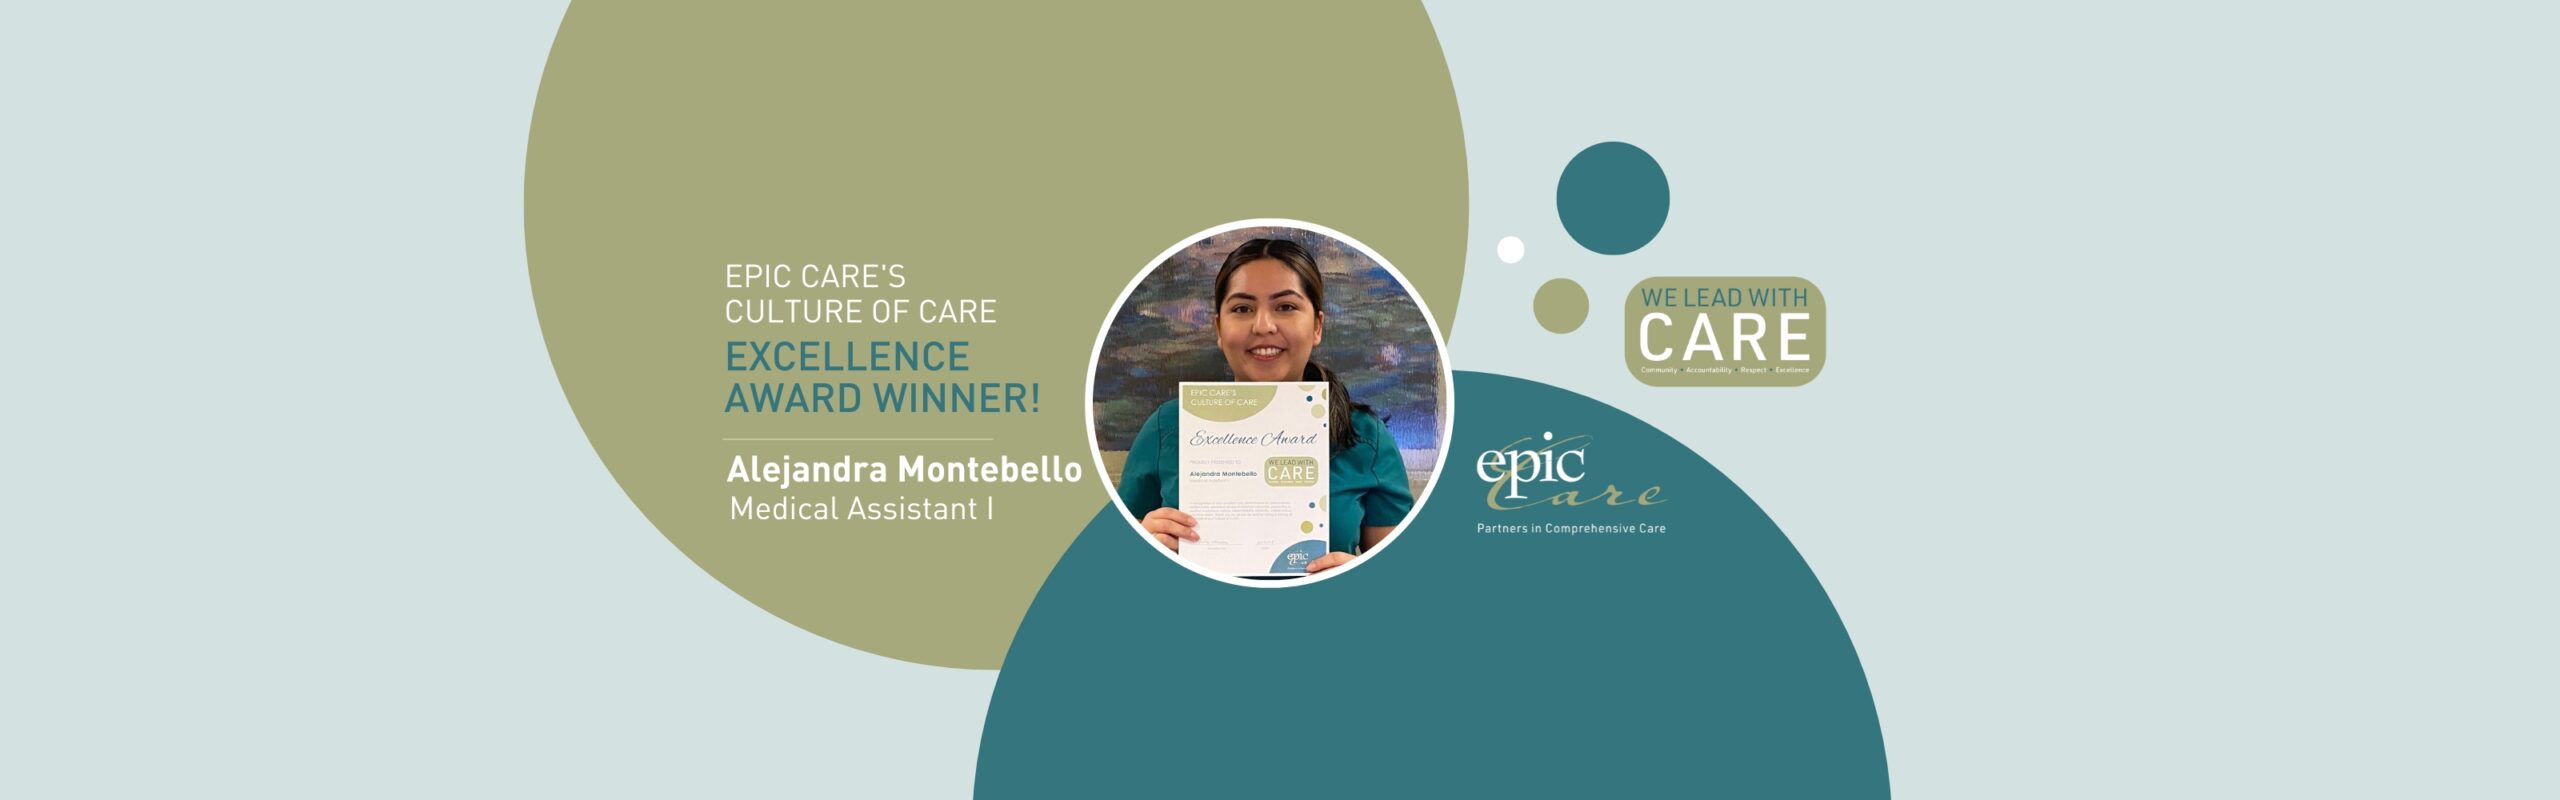 Epic Care’s Culture of CARE Excellence Award Winner! – Alejandra Montebello